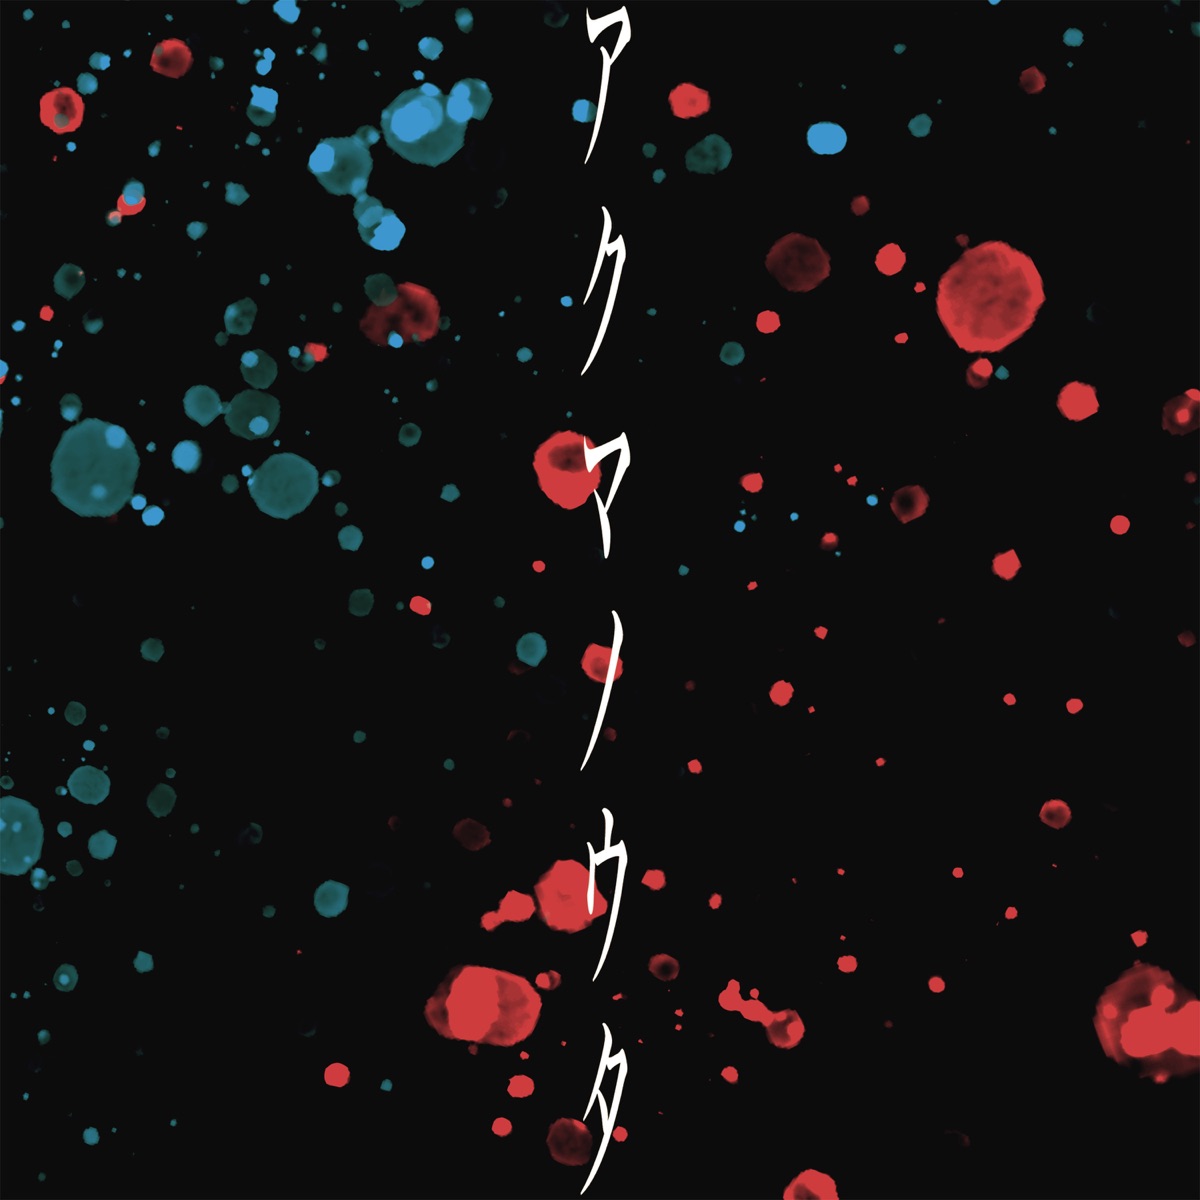 BAK featuring Sayuri — Akuma no Uta cover artwork